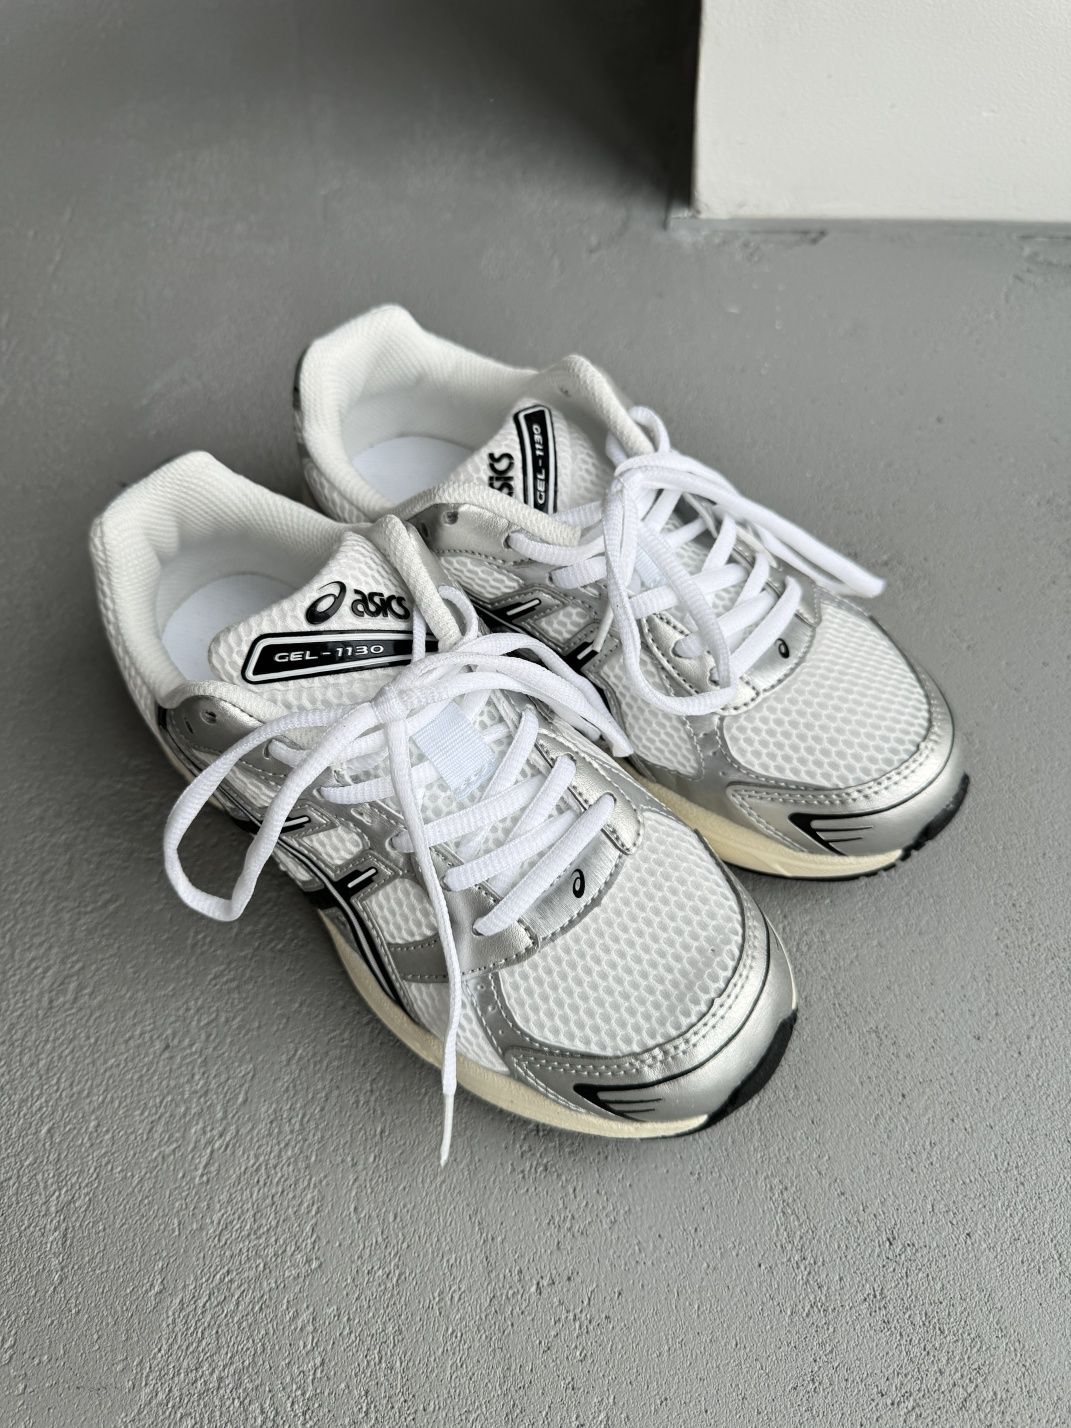 (унісекс) кросівки Asics Gel-1130 White/Silver(літо /весна)